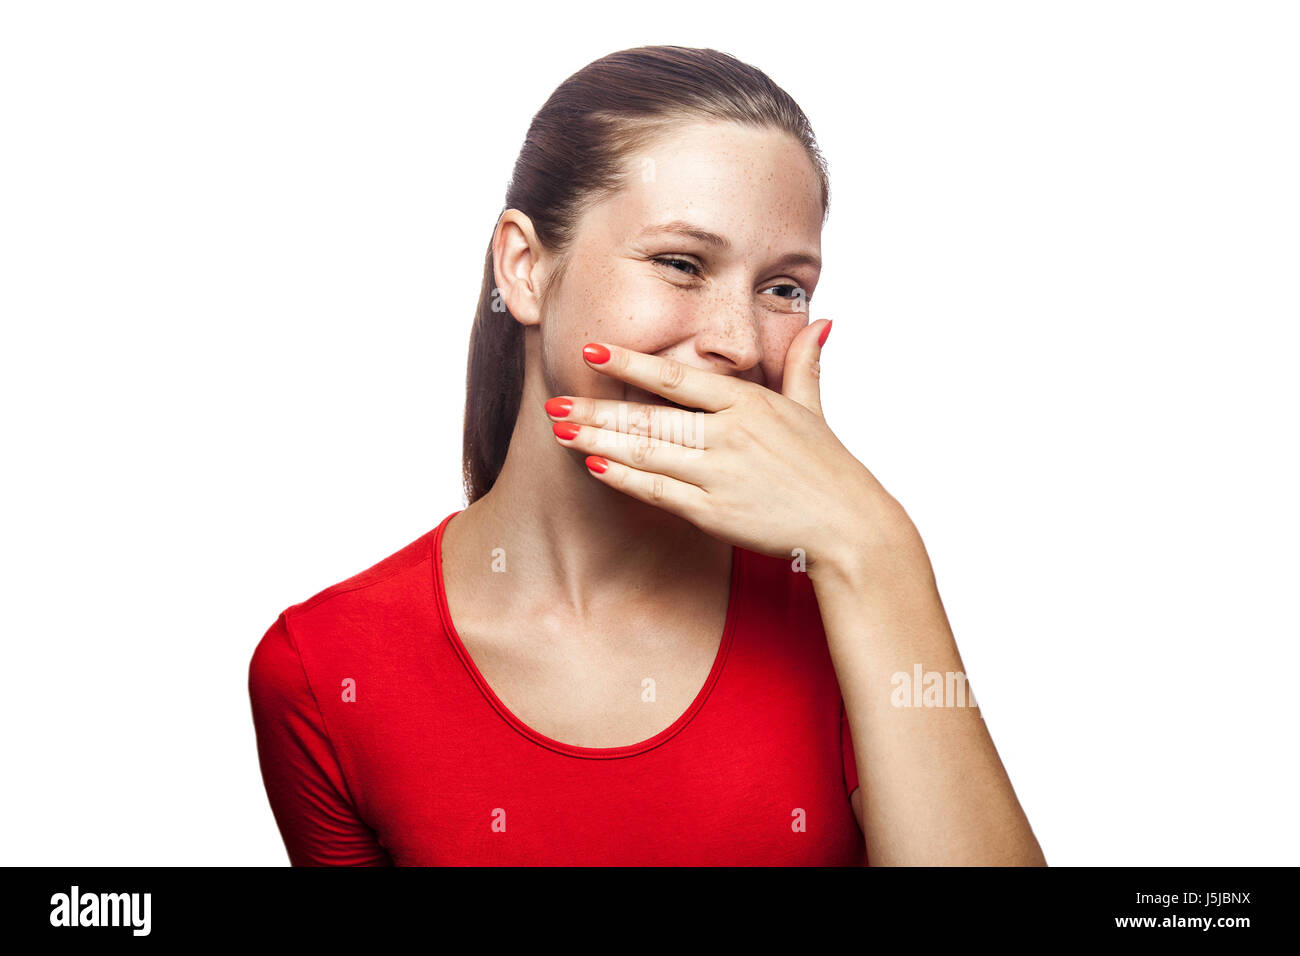 Ritratto di felice risate woman in red t-shirt con lentiggini con mano dietro la sua bocca. studio shot. isolato su sfondo bianco. Foto Stock